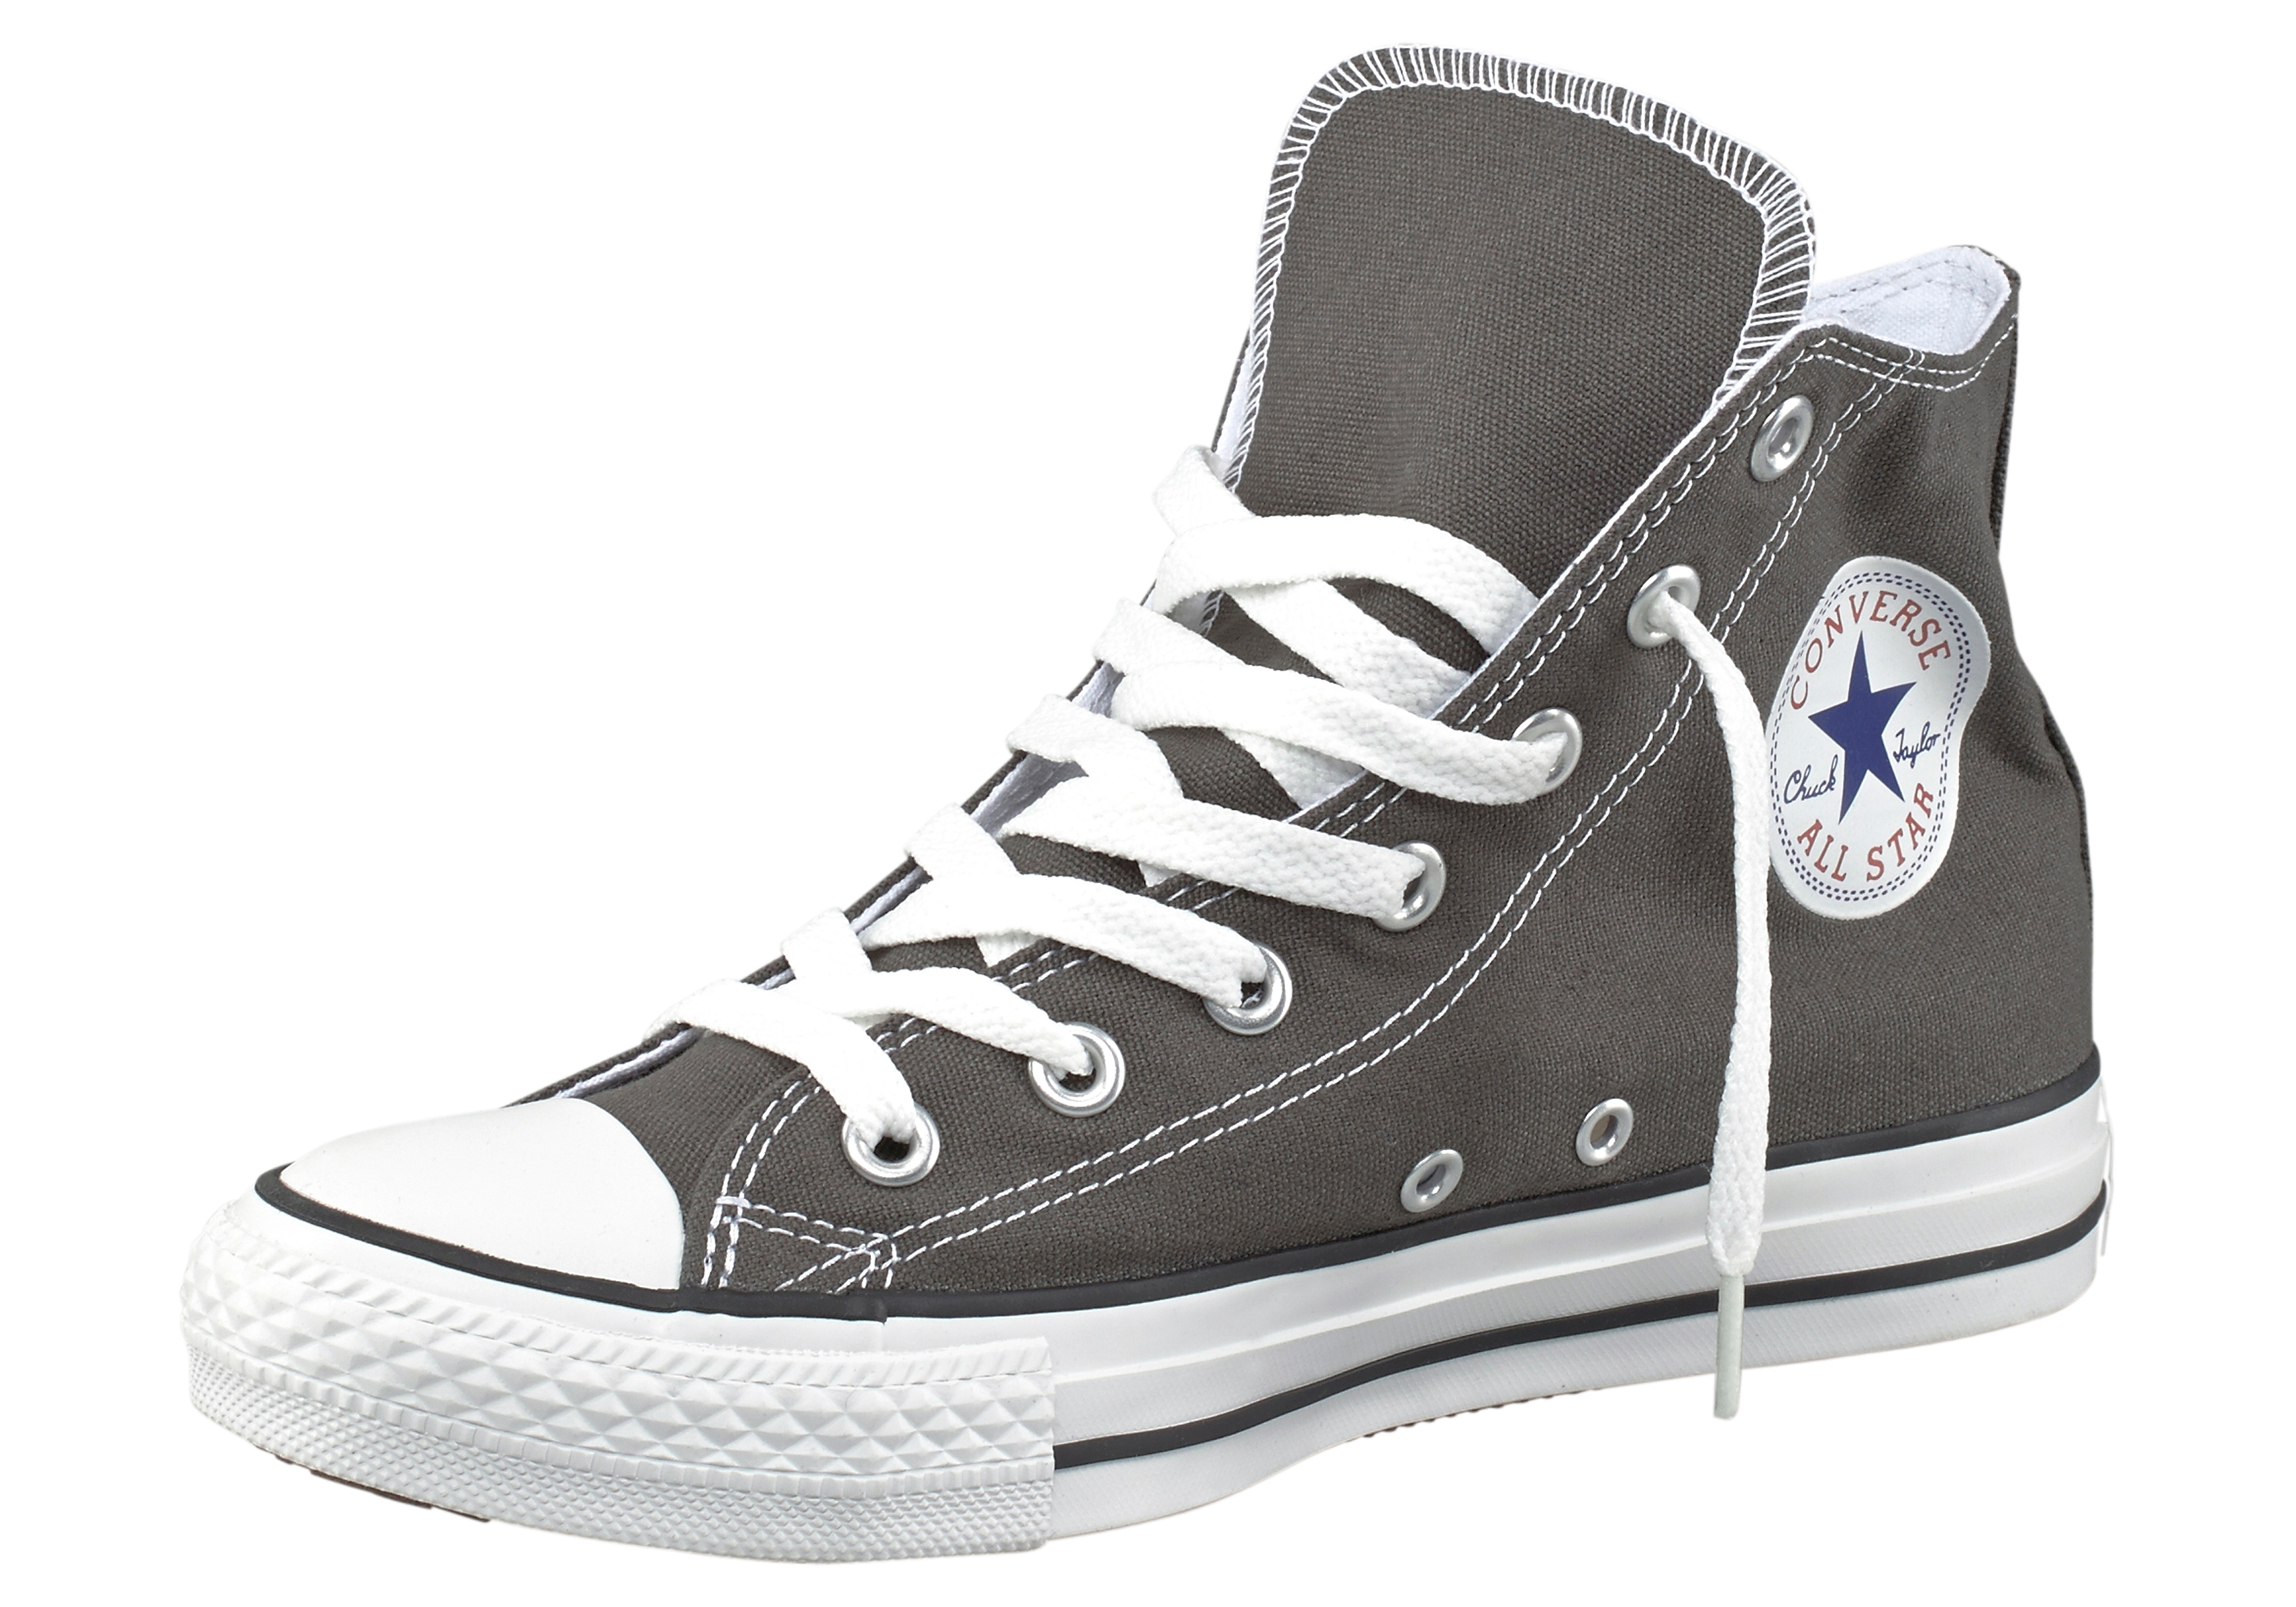 Antipoison Ik geloof Recreatie Converse Sneakers Chuck Taylor All Star Core Hi online bestellen | OTTO